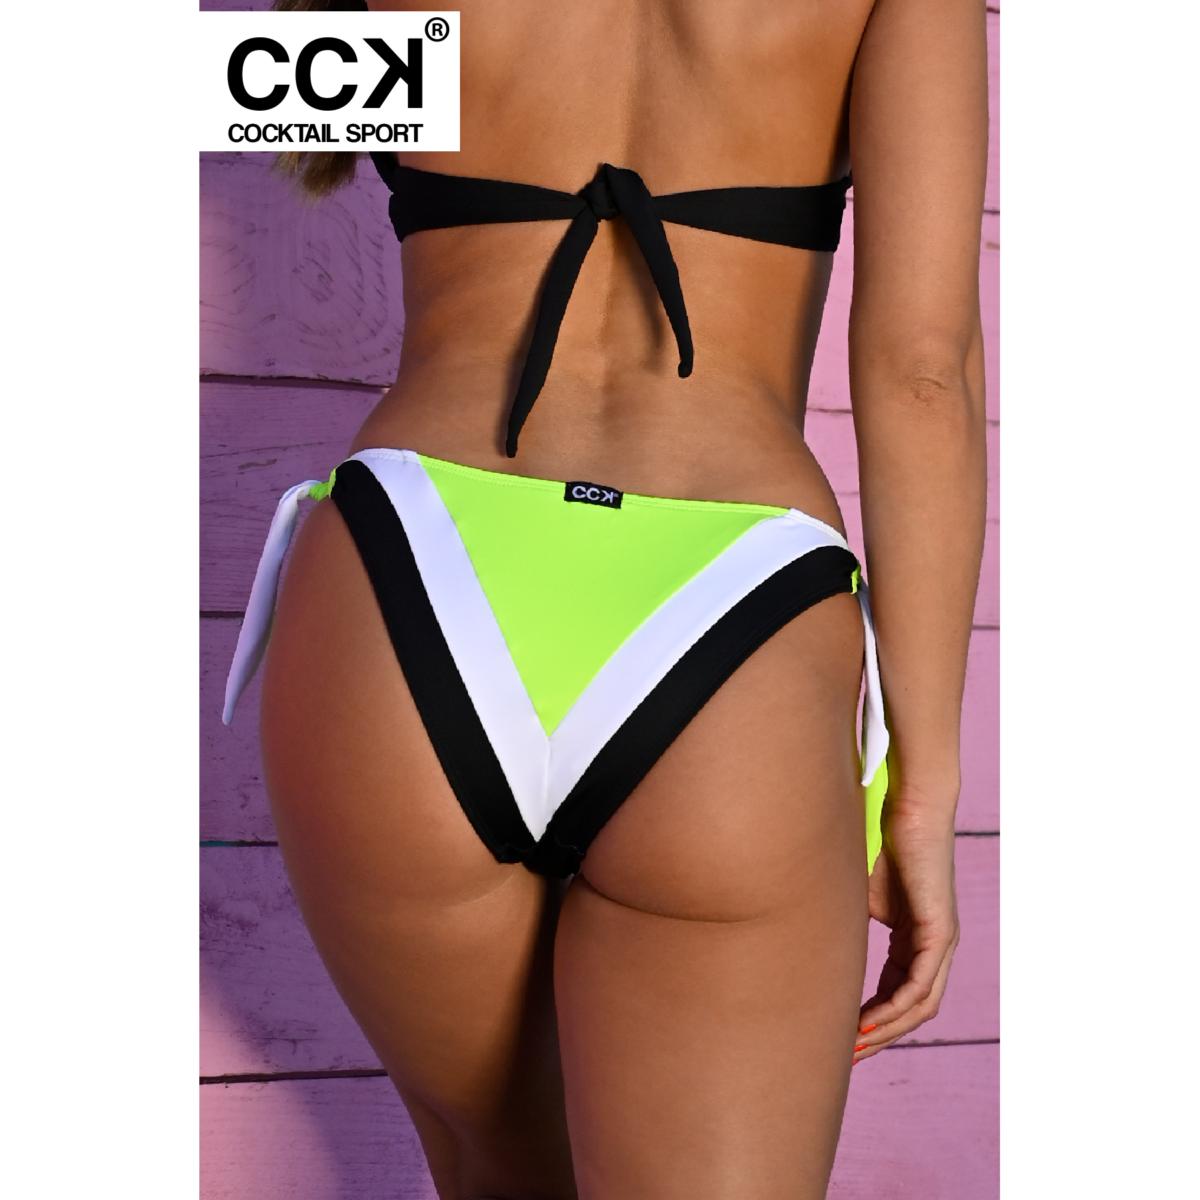 Fekete-fehér-neon zöld, oldalt megkötős, hagyományos fazonú tricolor bikini alsó.